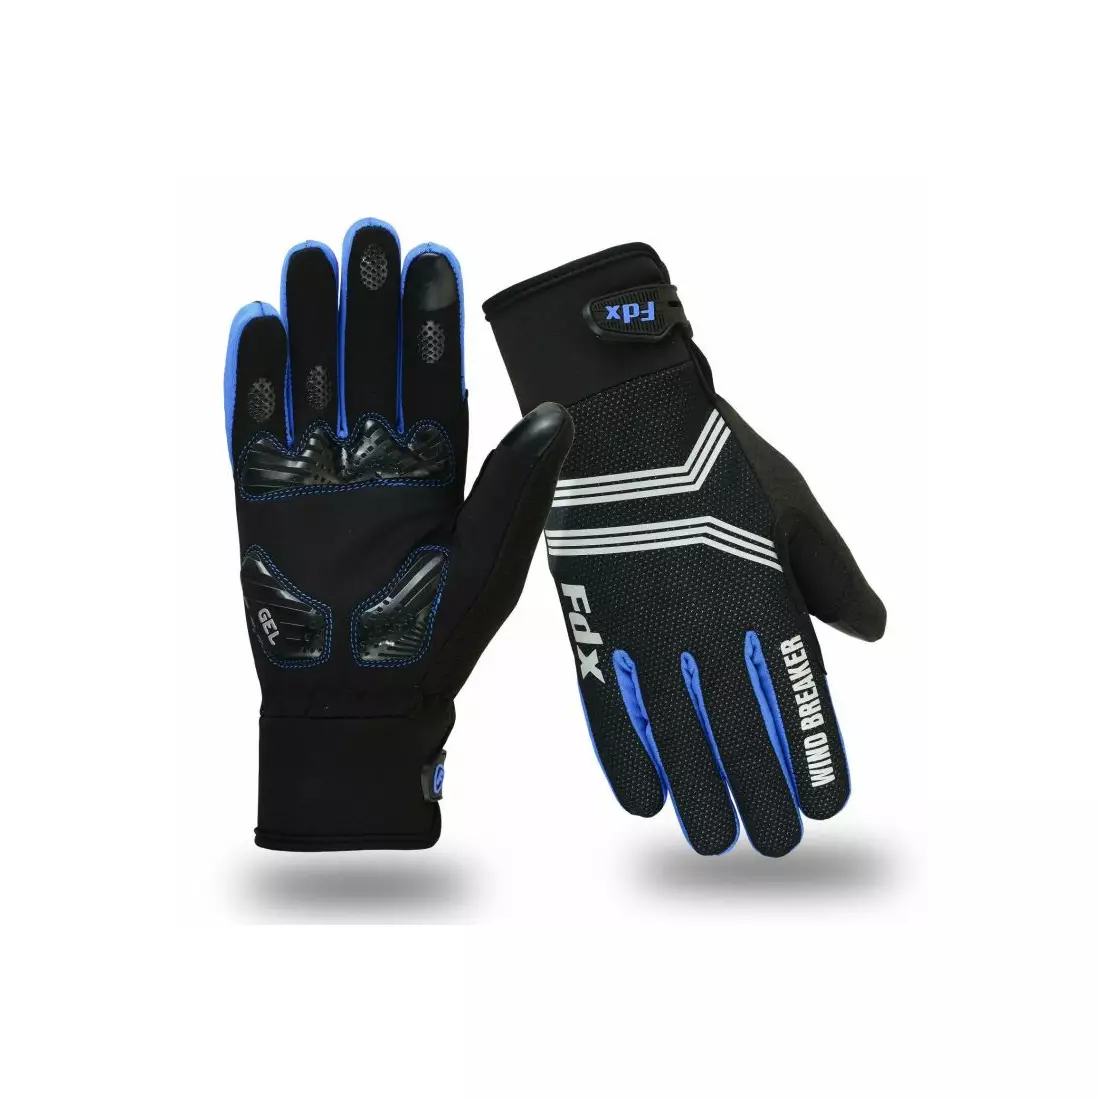 Mănuși de iarnă FDX Wind Breaker Gel pentru ciclism, negre și albastre